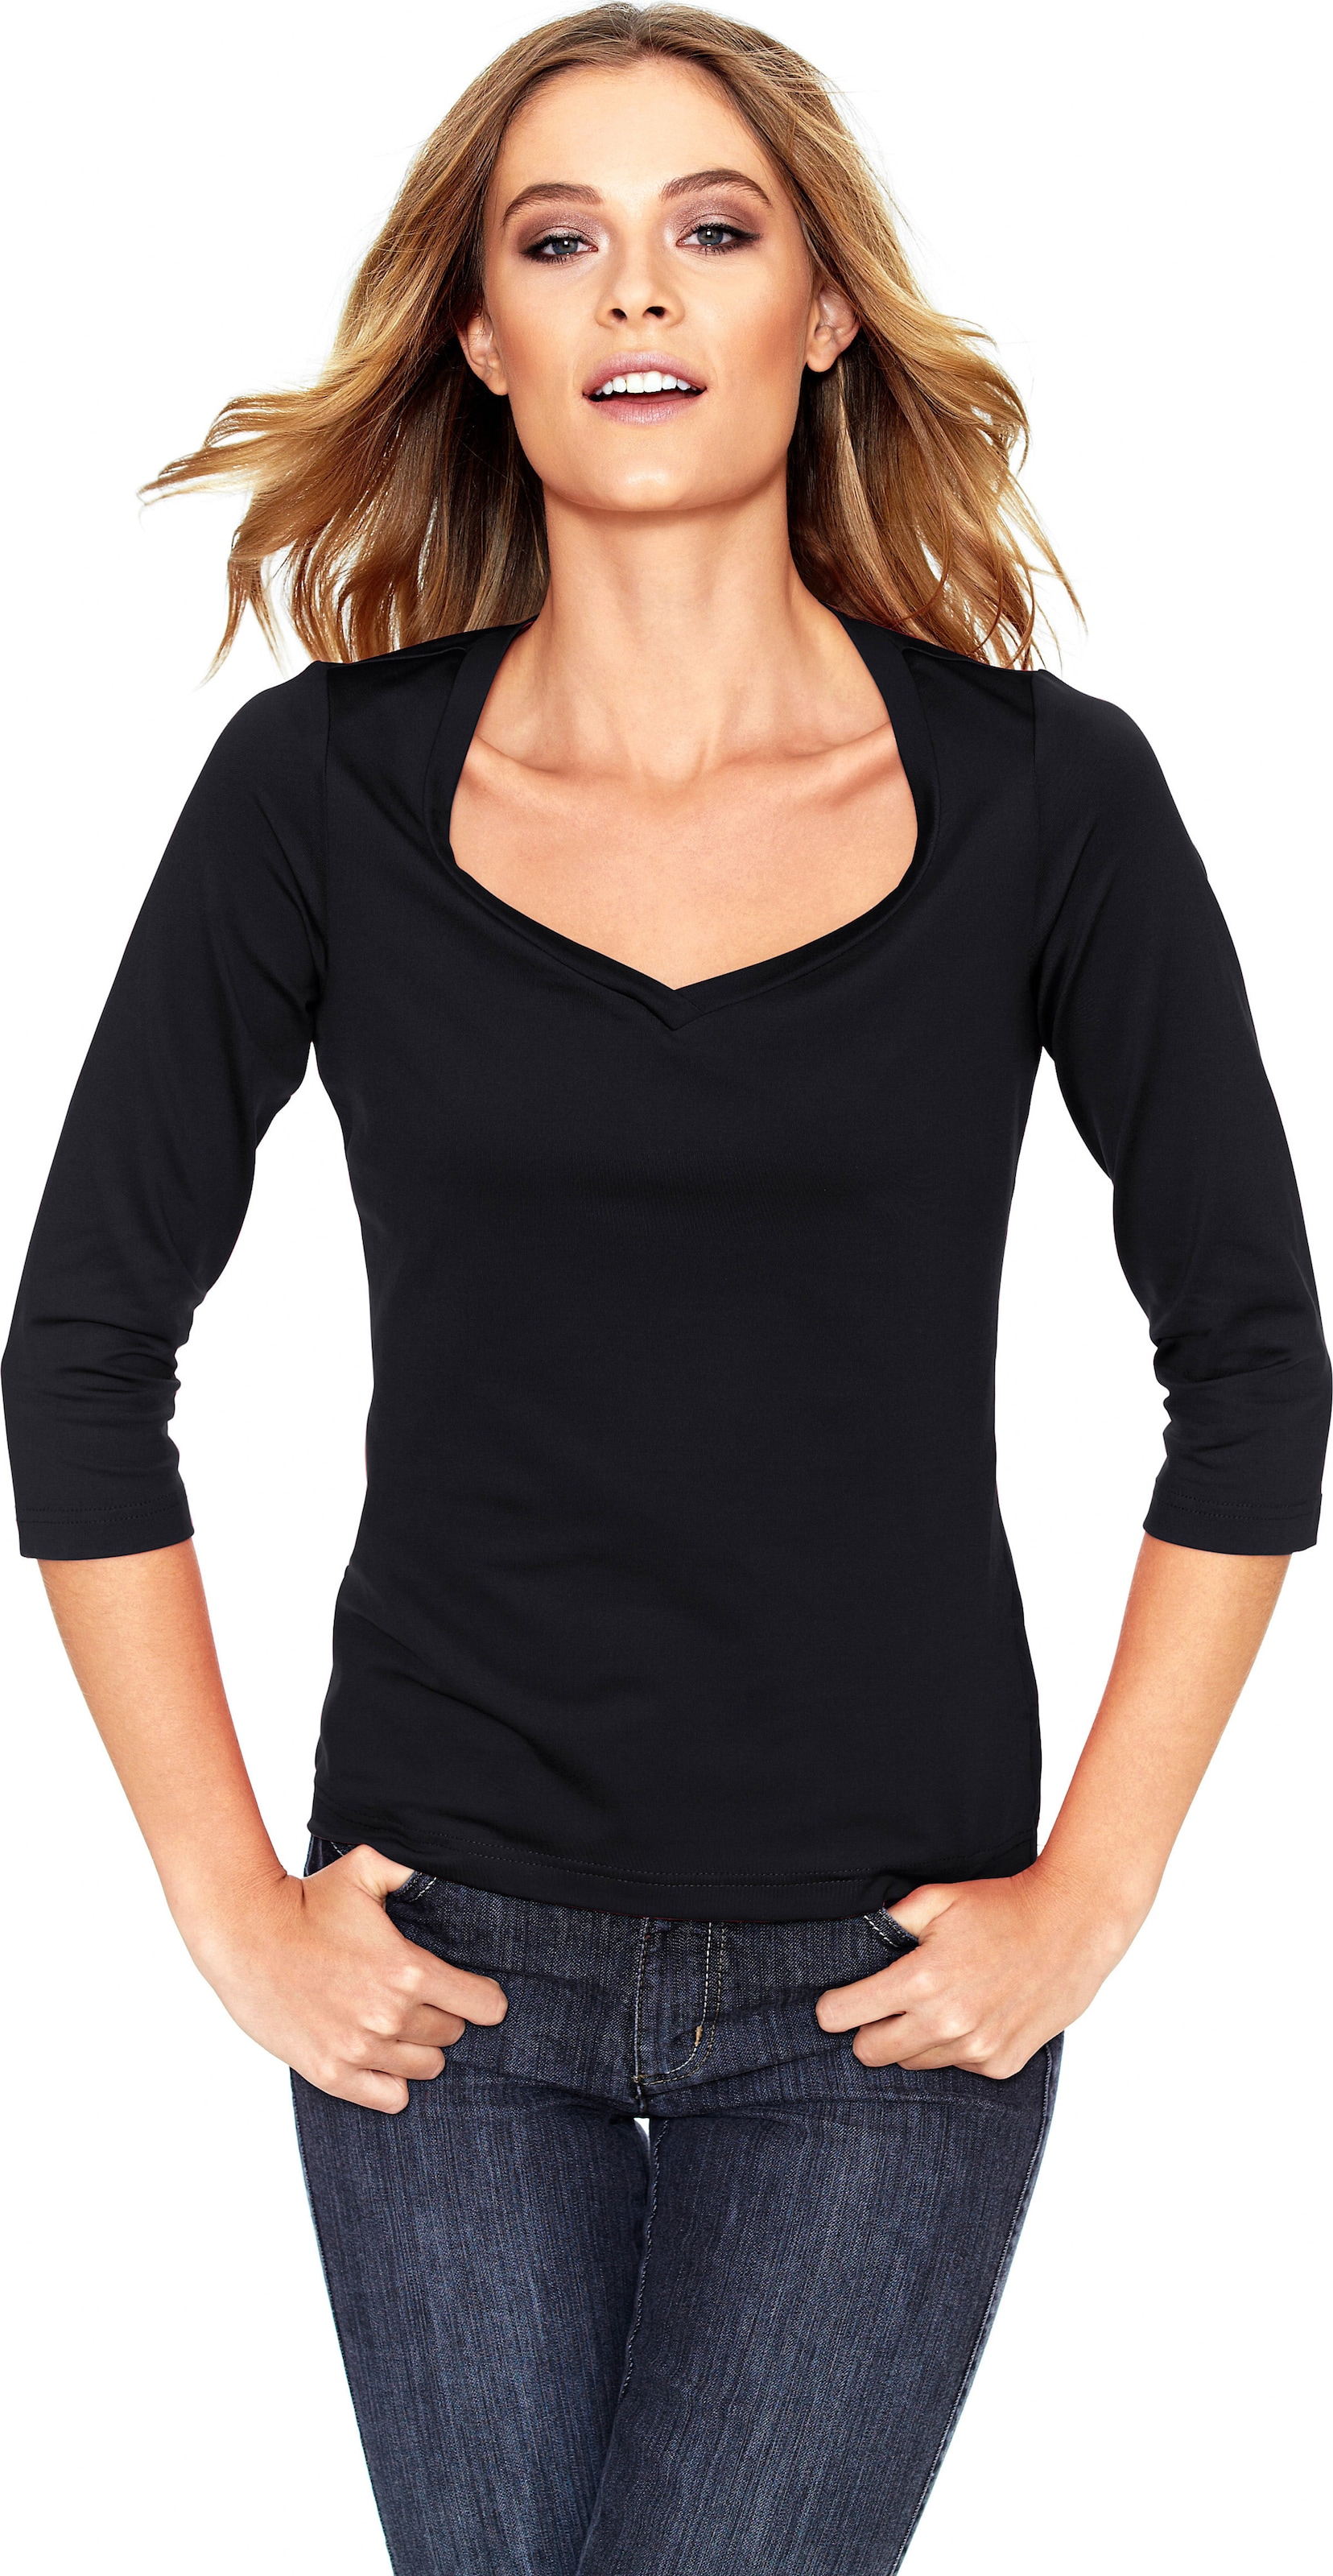 Herz mit günstig Kaufen-Shirt in schwarz von heine. Shirt in schwarz von heine <![CDATA[Shirt Femininer Kombi-Style aus Tactel, in angenehmer Stretch-Qualität. Mit hoher Farbbrillanz und leichtem Glanz. Figurbetont, mit Herzausschnitt und 3/4-Arm.]]>. 